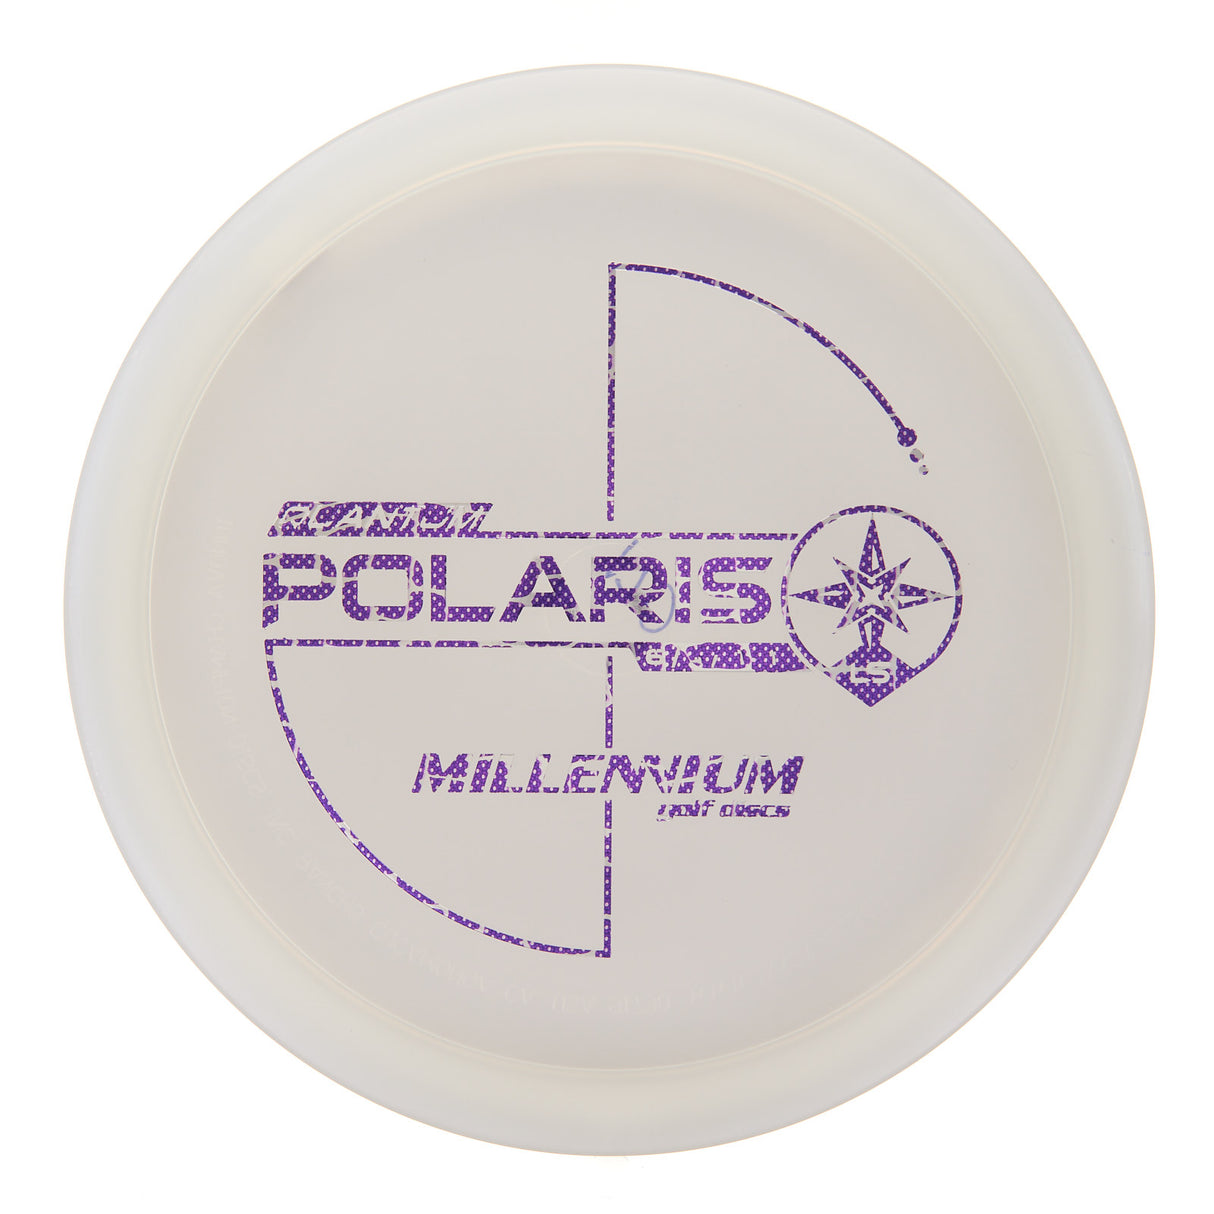 Millennium Polaris LS - Quantum 170g | Style 0001